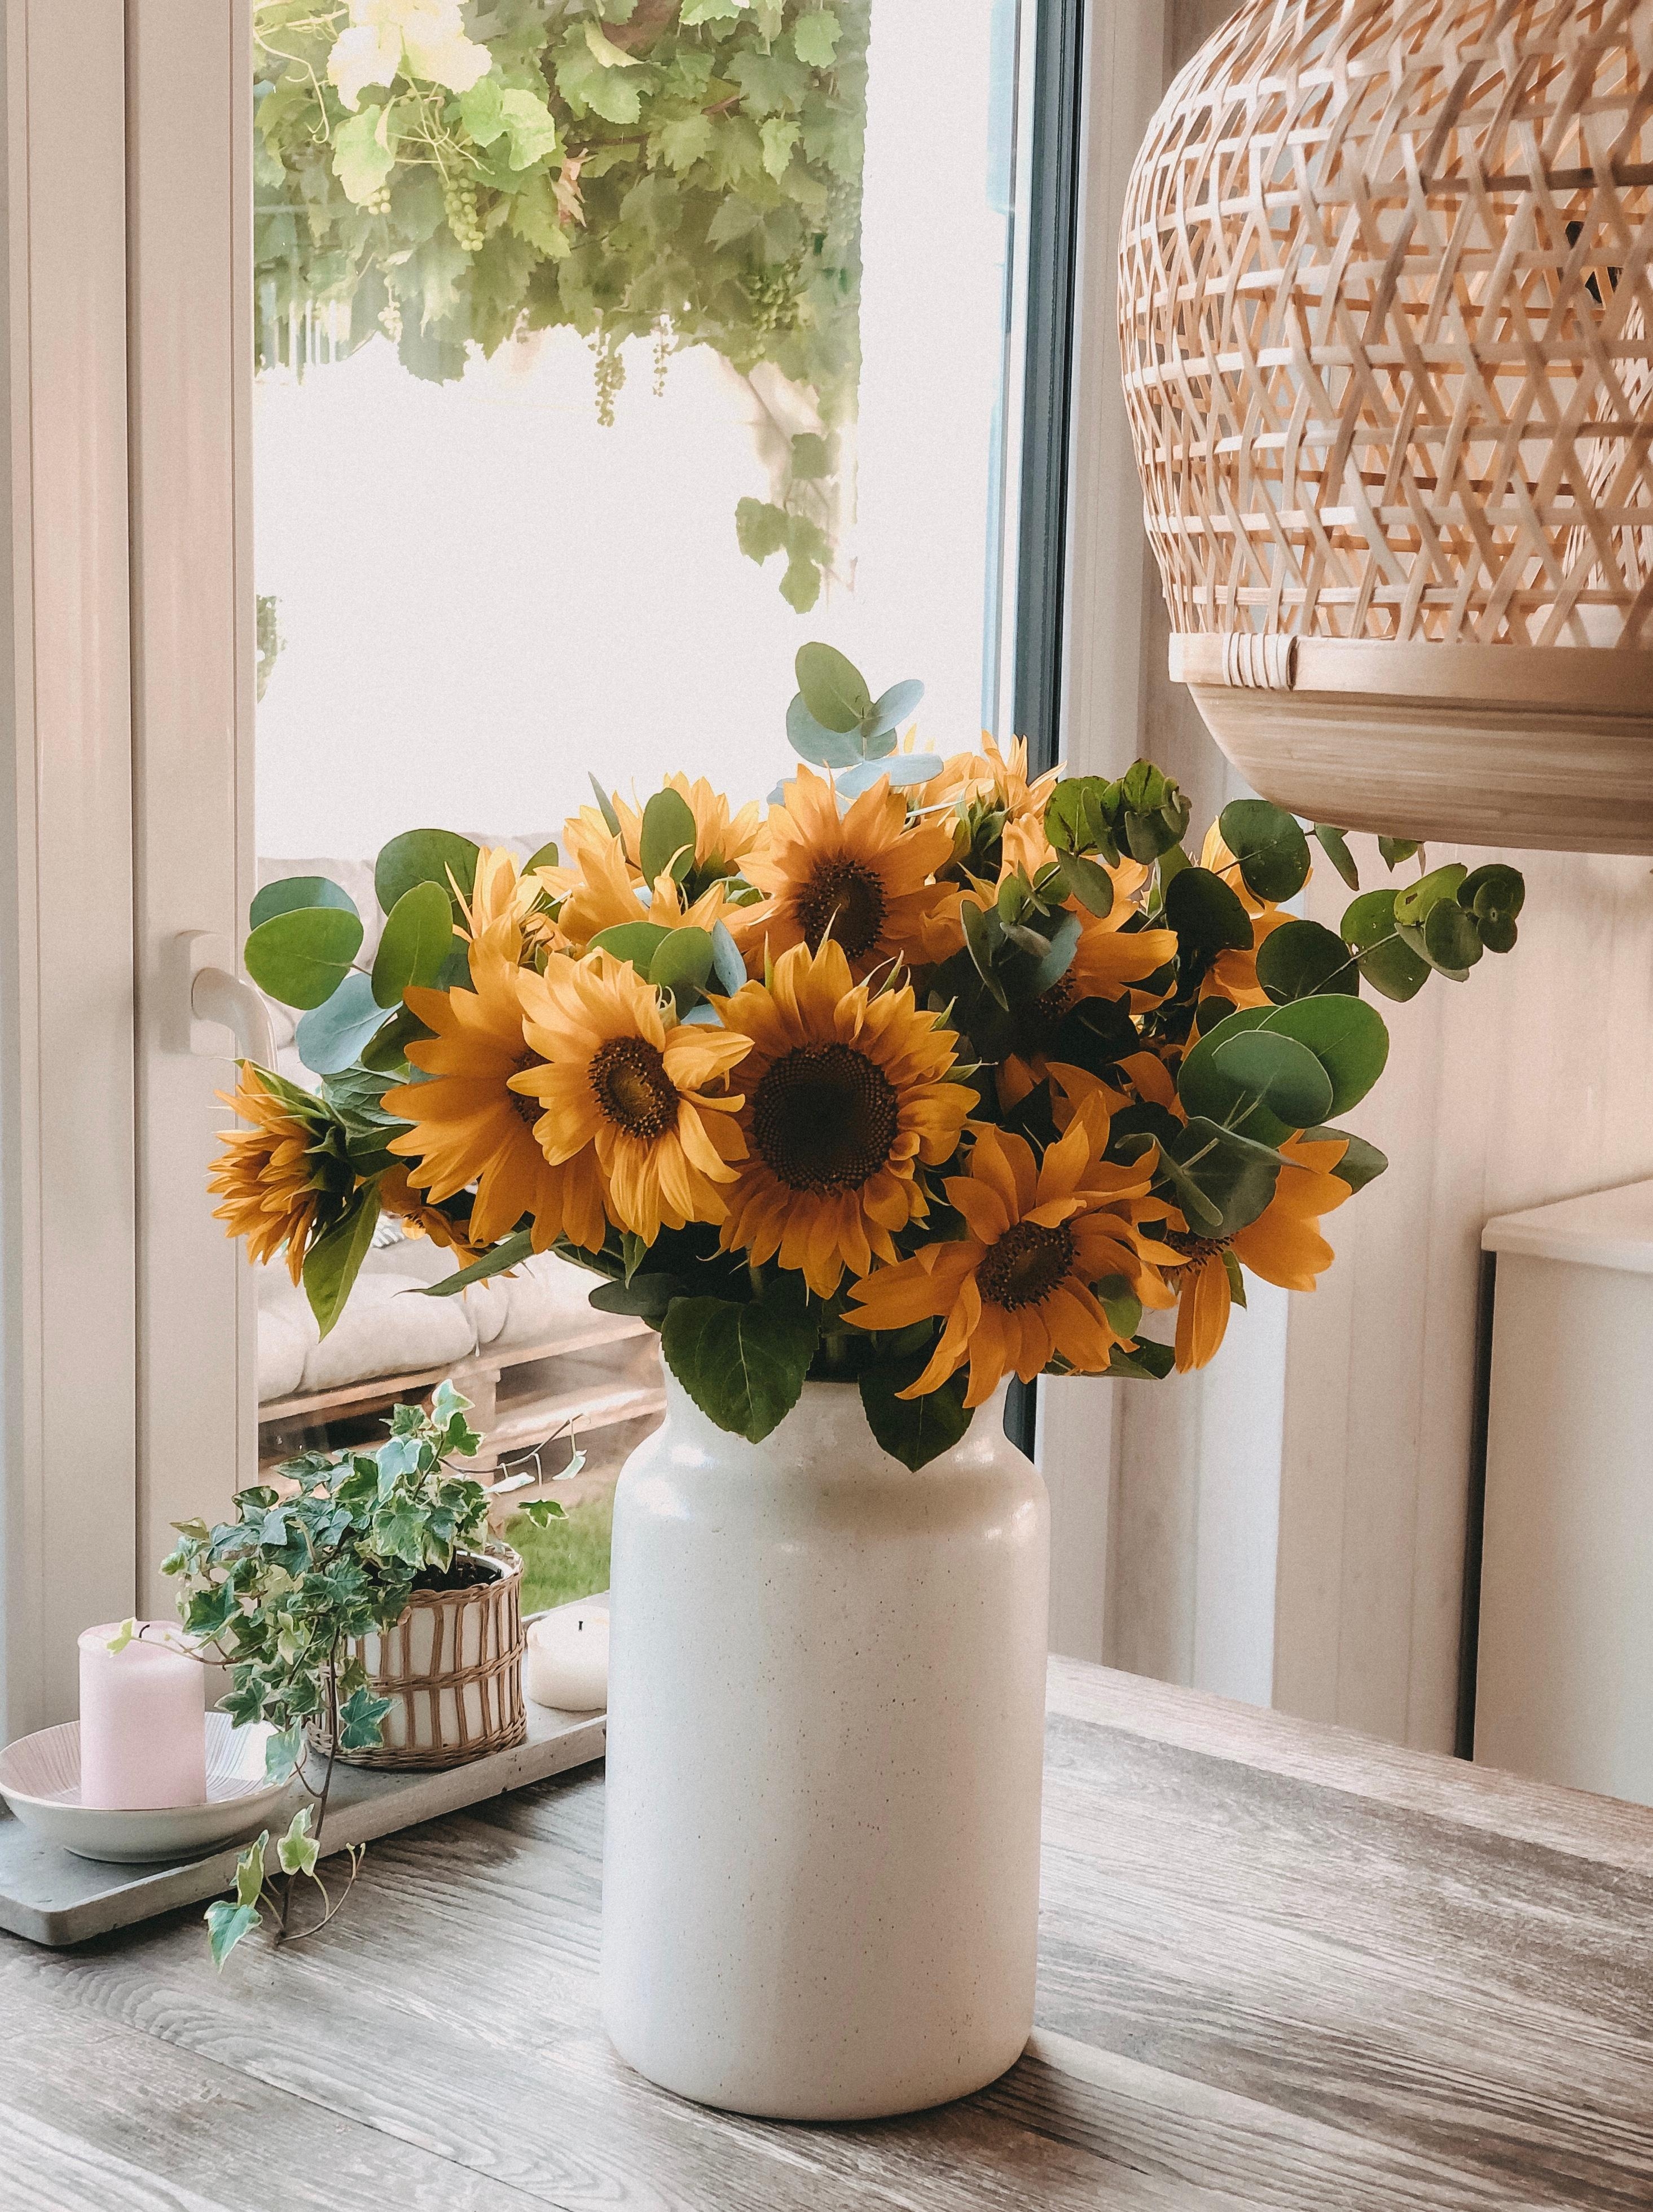 Mit viel Sonne und Sonnenblumen ins Wochenende 🌻🌻🌻
#happyweekend
#myfreshflowerfriday
#sonnenblumenliebe